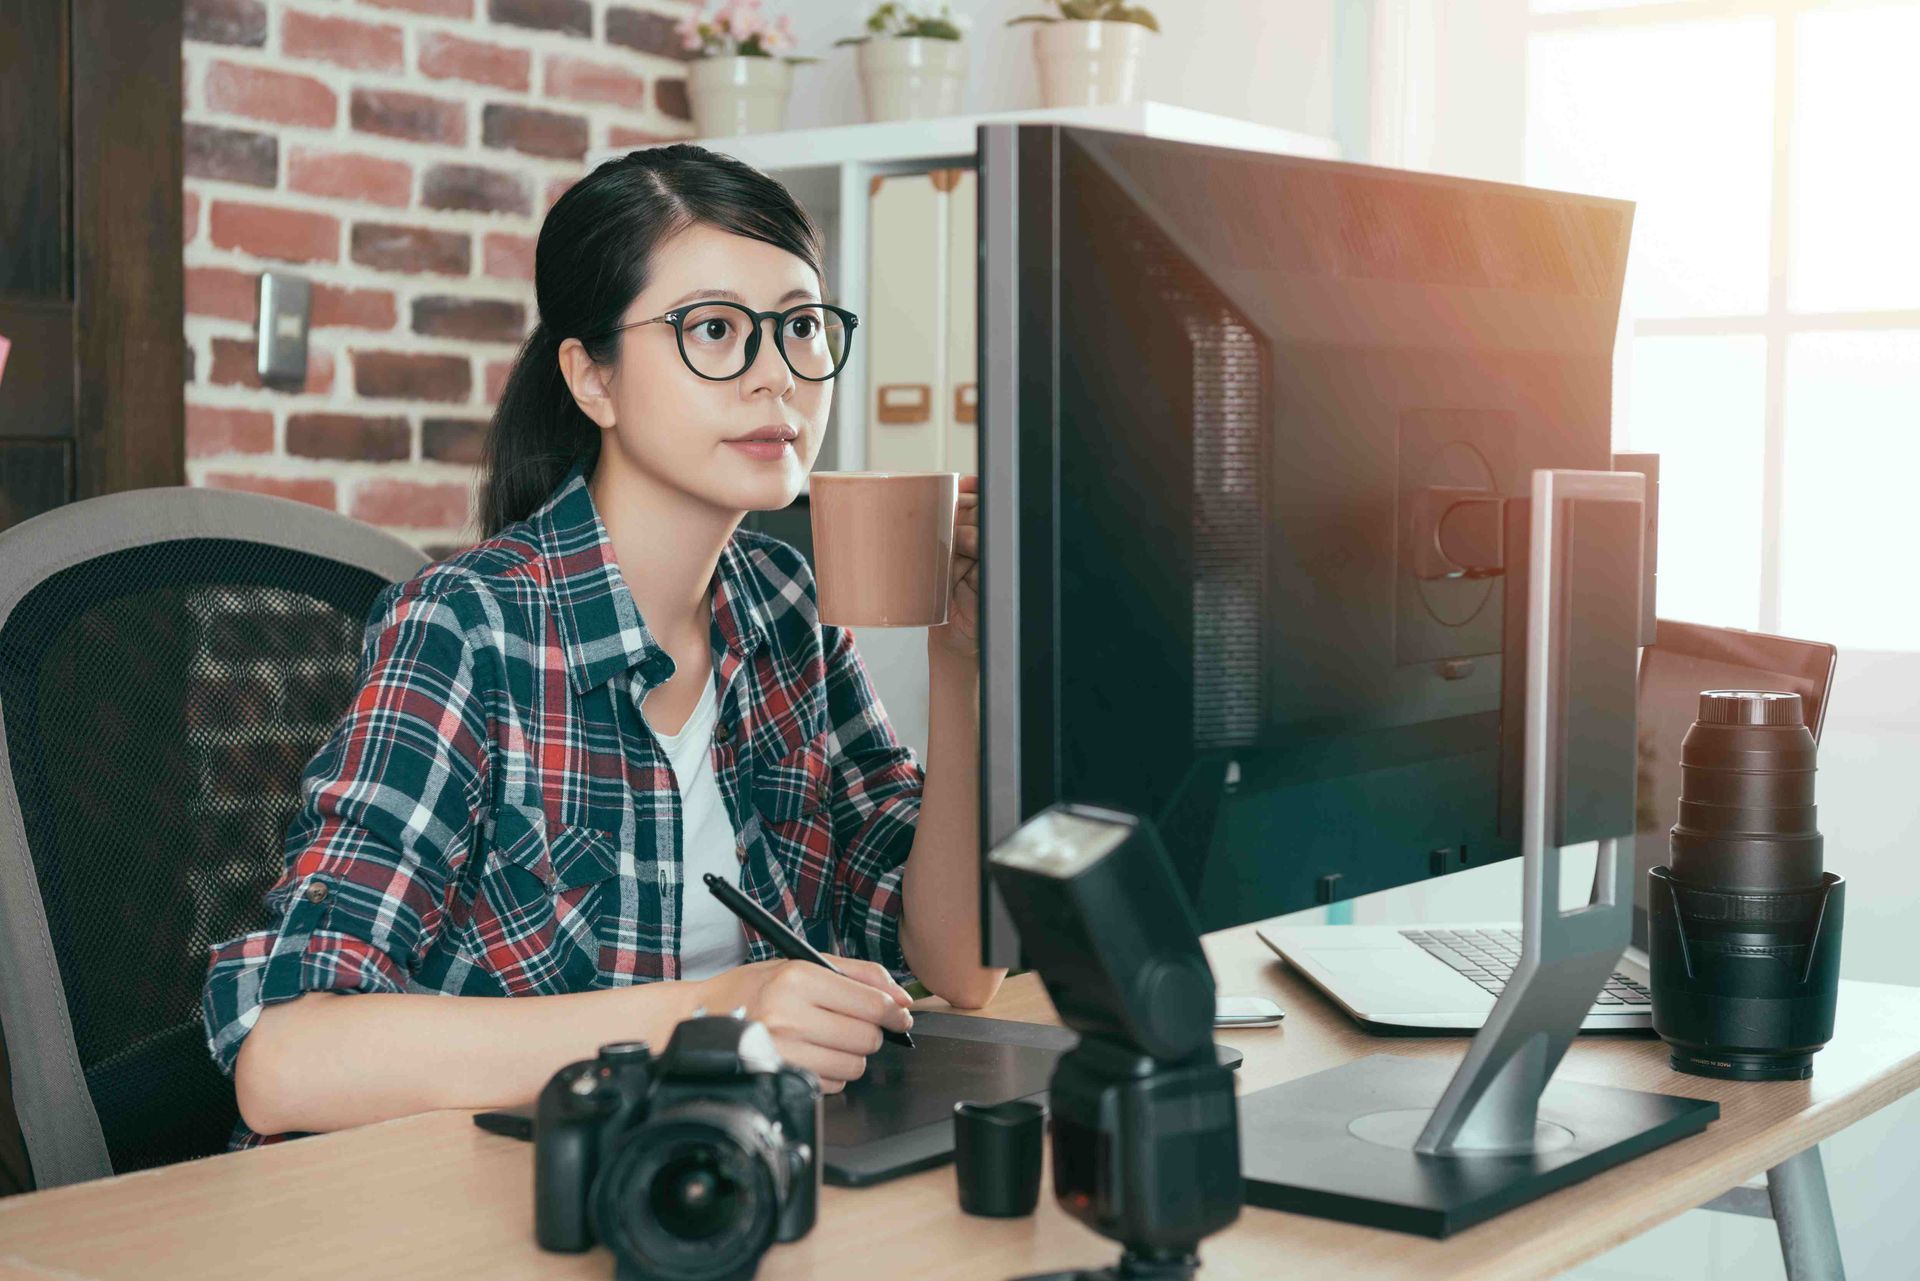 A woman photographer working on a desktop computer